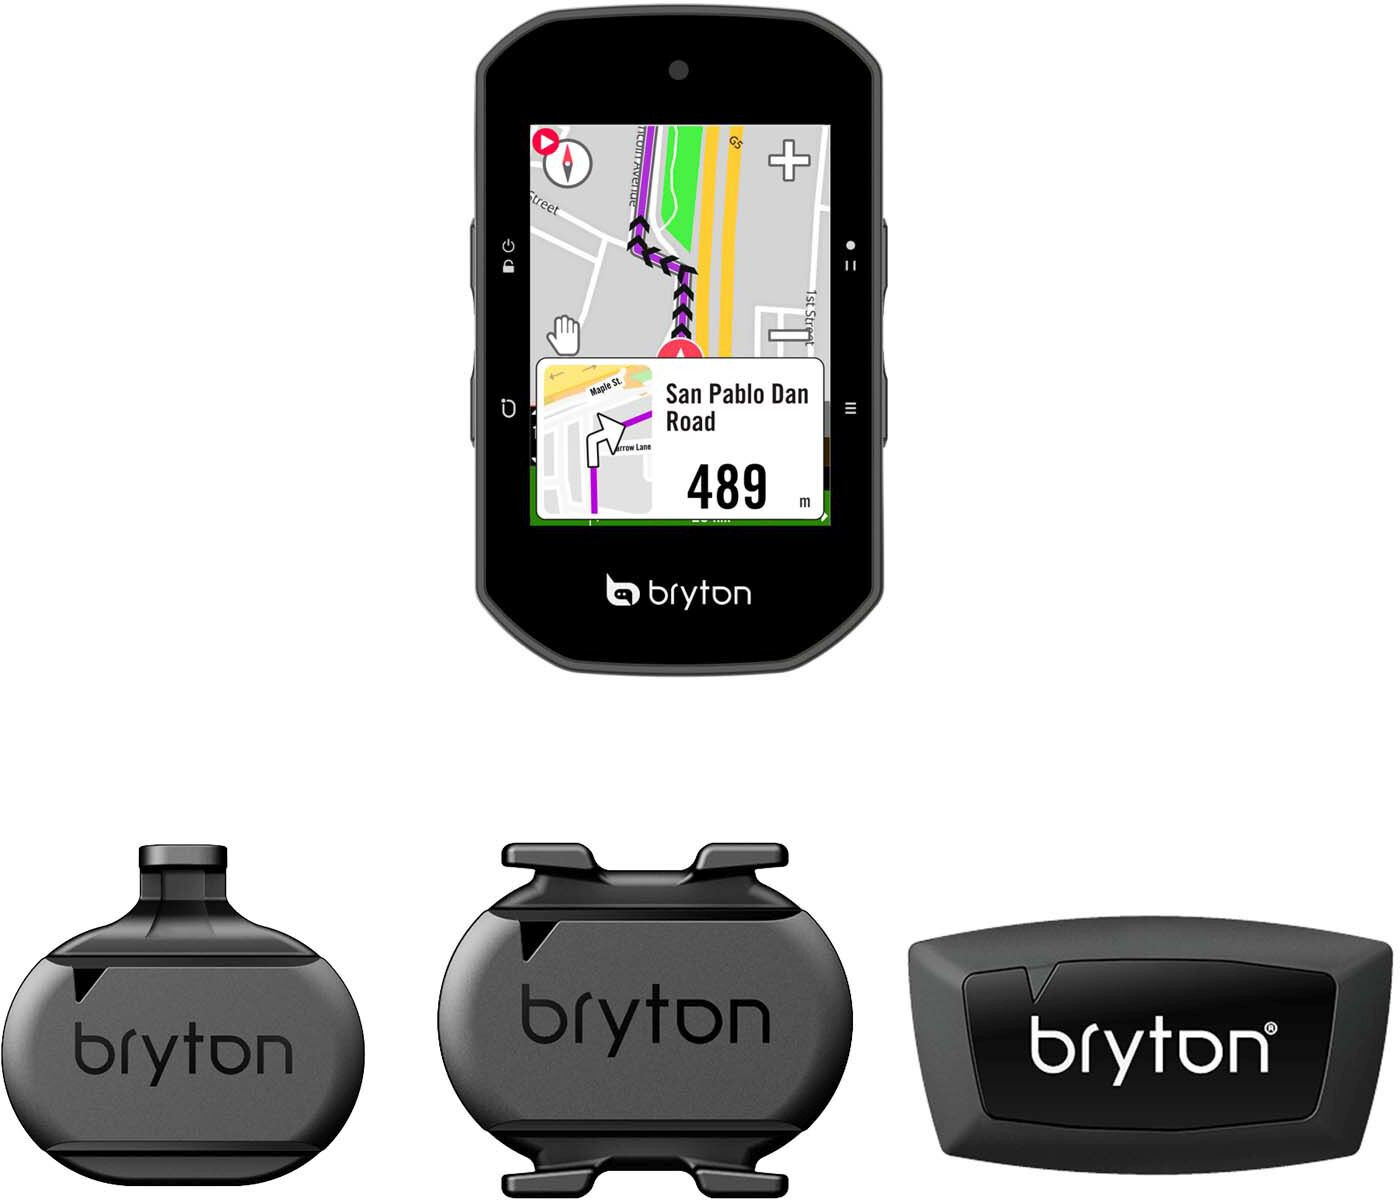 BRYTON COMPTEUR GPS RIDER 750E (SANS CAPTEUR) - SILDEL VELO